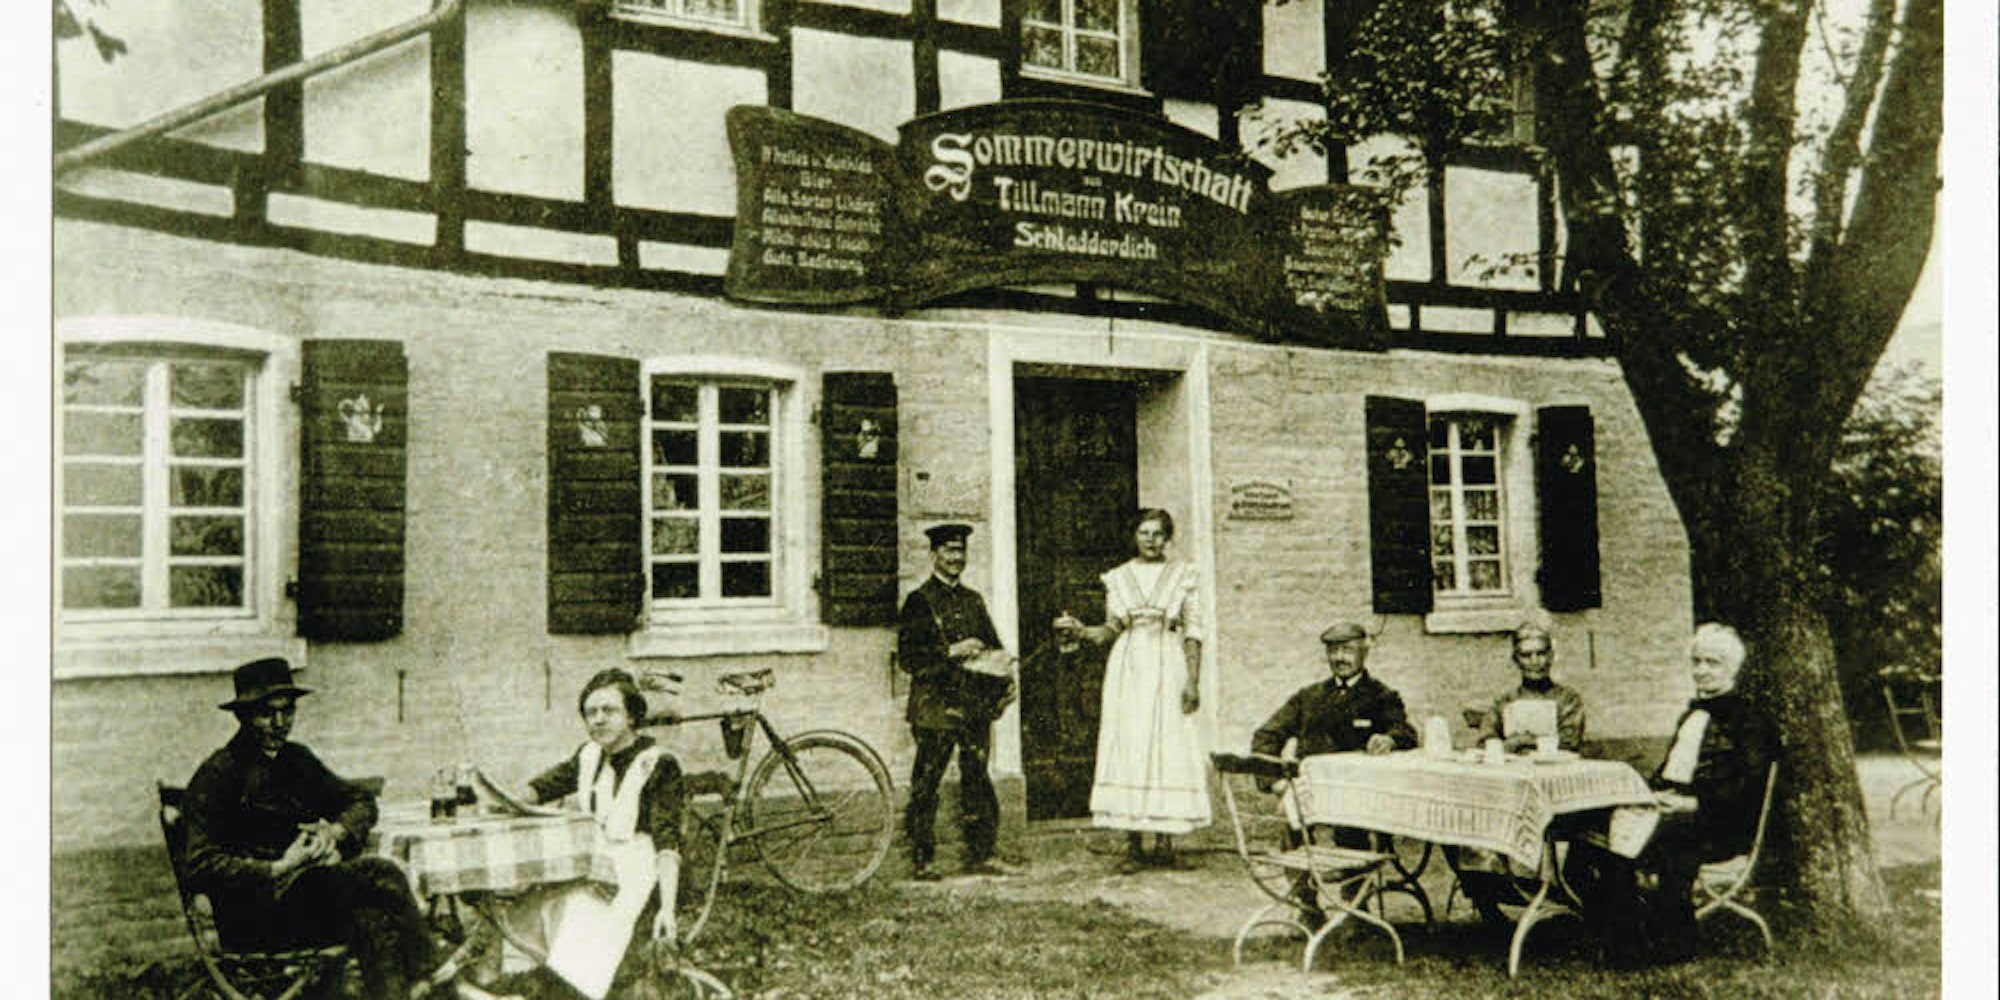 Seit den 20er-Jahren war der Lindenhof eine Gaststätte, Tillmann Krein betrieb dort eine Sommerwirtschaft.